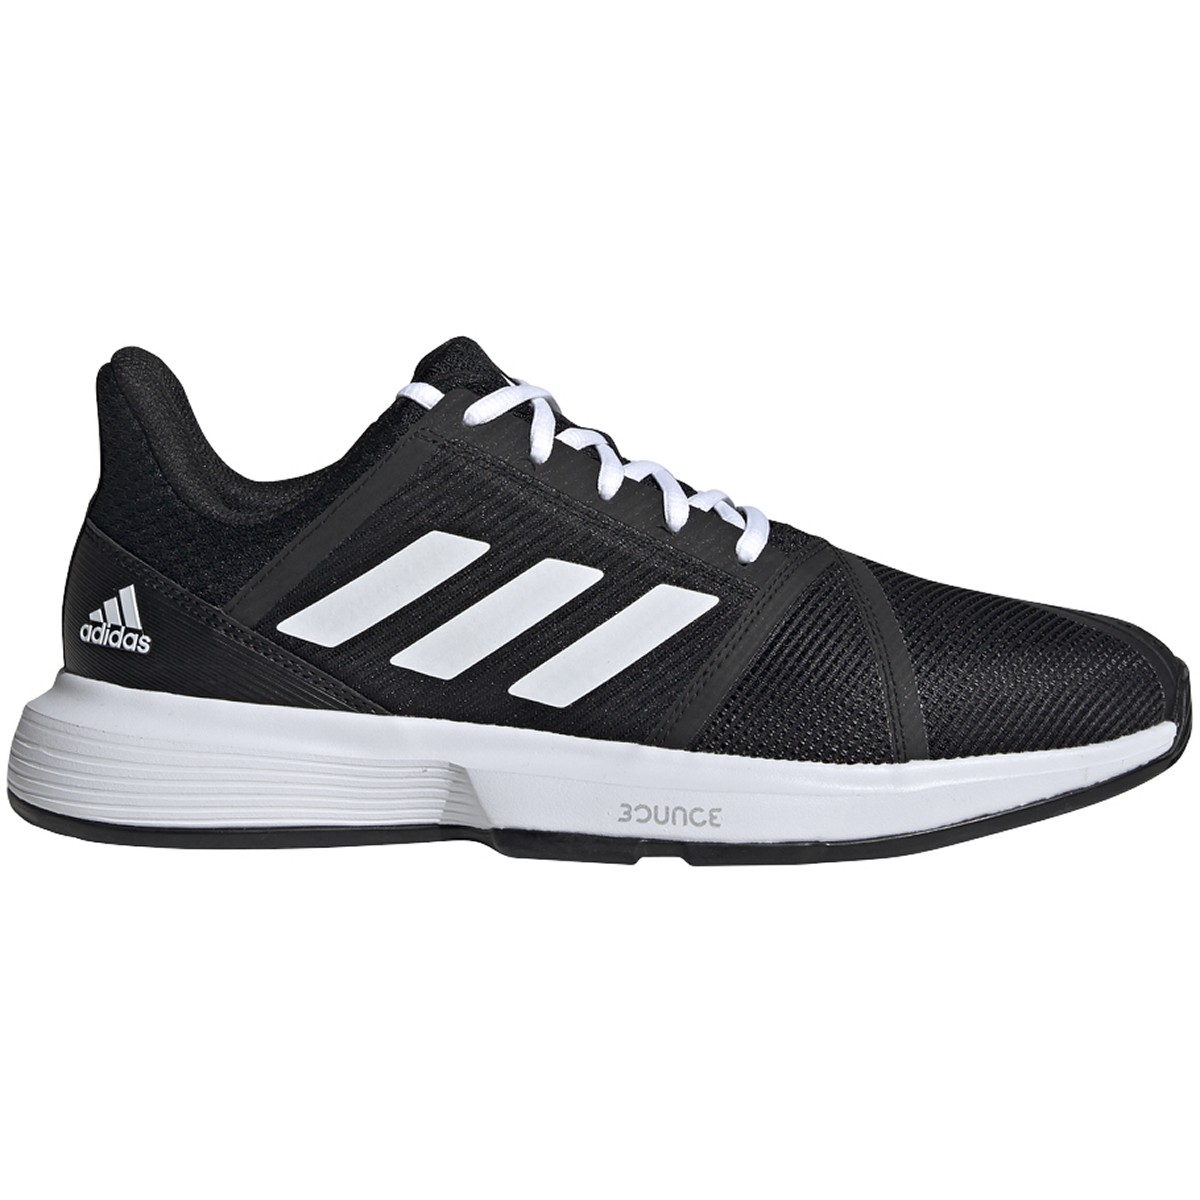 Adidas Men's CourtJam Bounce Tennis Shoes (Core Black/White)